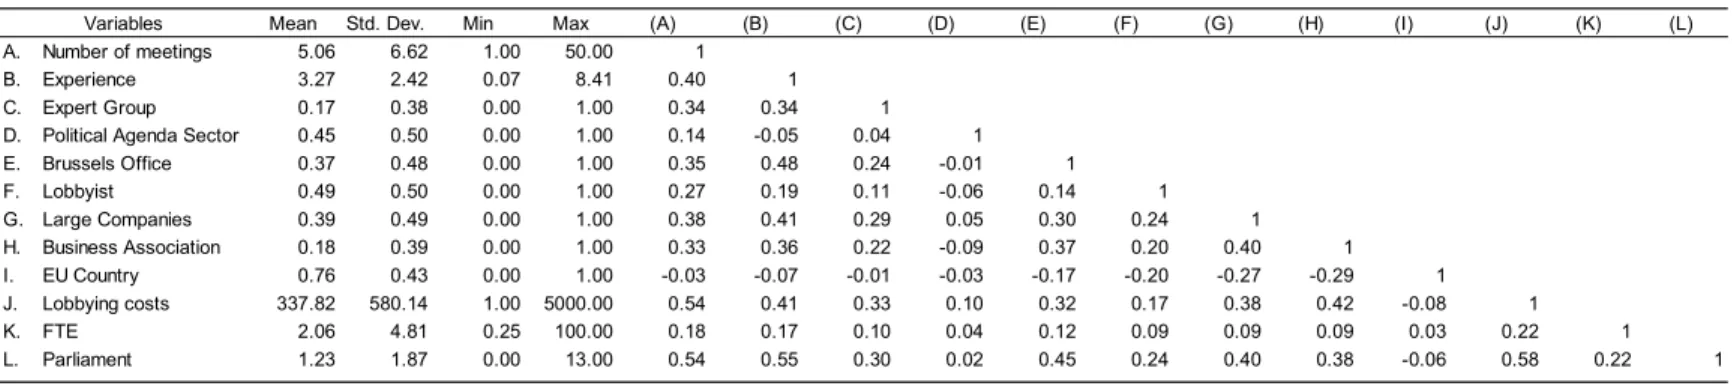 Table 2 - Descriptive Statictics and Correlation Matrix - Reduced Sample